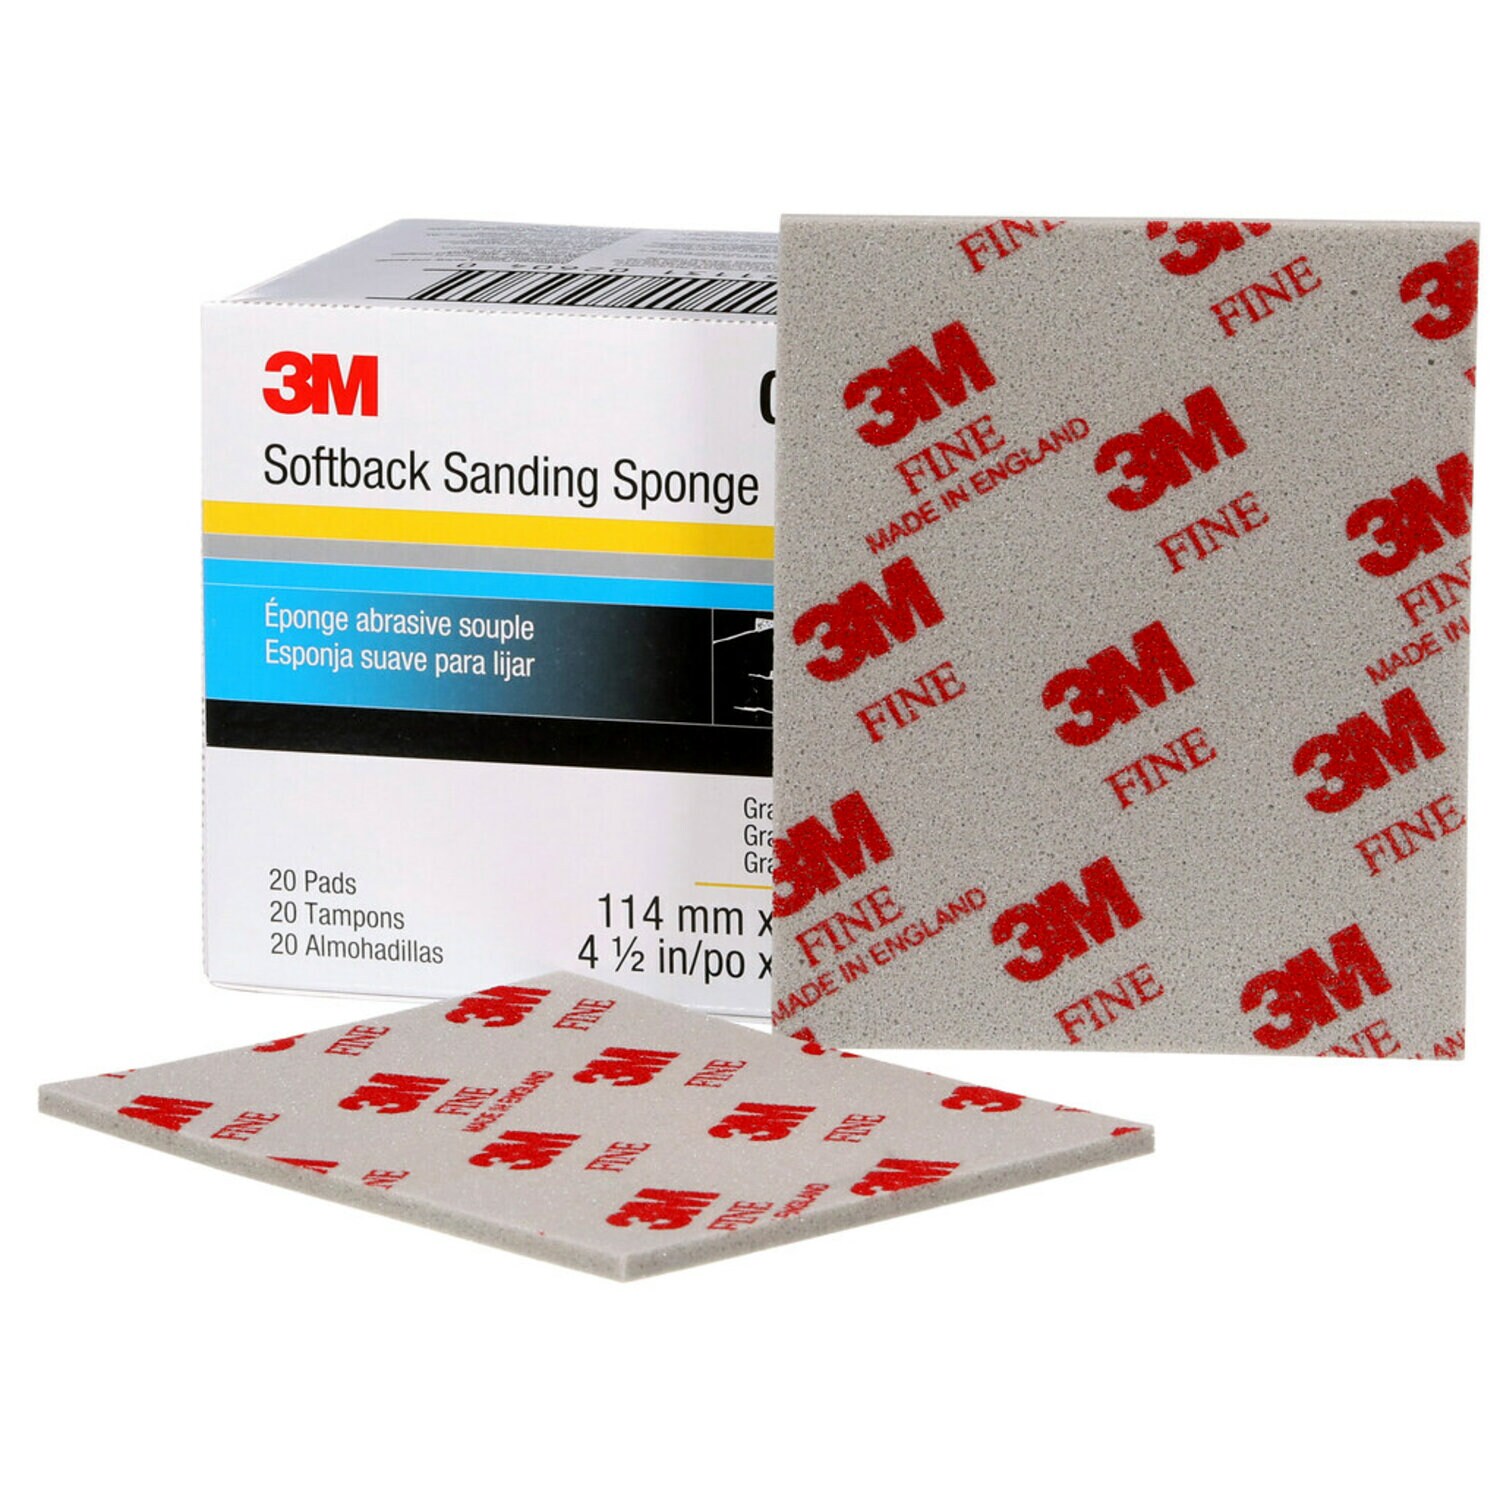 7000000589 - 3M Softback Sanding Sponge 02604, 4 1/2 in x 5 1/2 in (115 mm x
140 mm), Fine, 20 Sponges/Pack, 6 Packs/Case